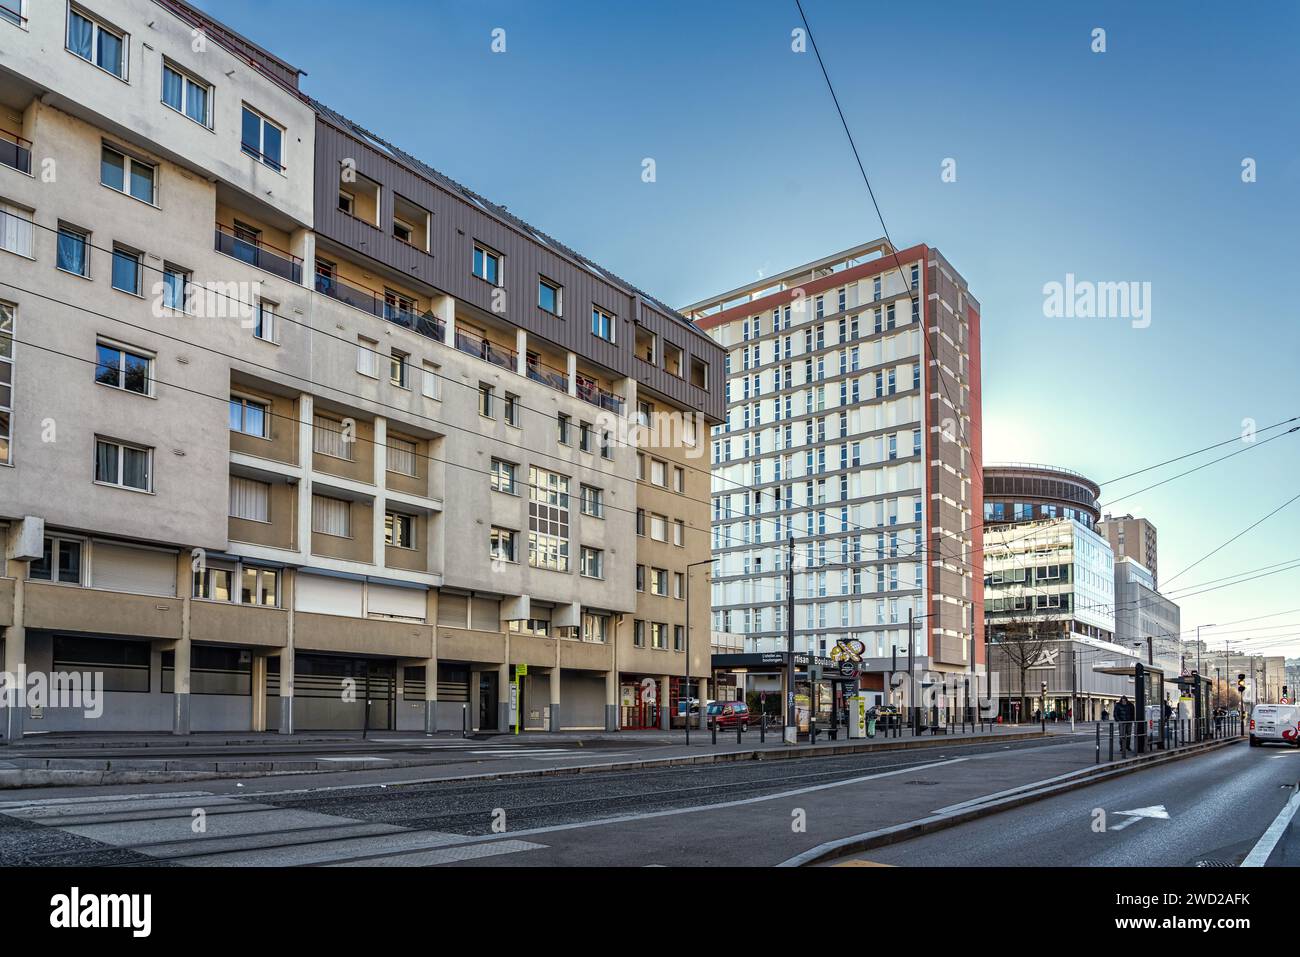 En la ciudad de diseño de Saint-Étienne, incluso los edificios residenciales de gran altura con balcones tienen un aspecto refinado. Saint-Étienne, Auvernia-Rhône-Alpe Foto de stock